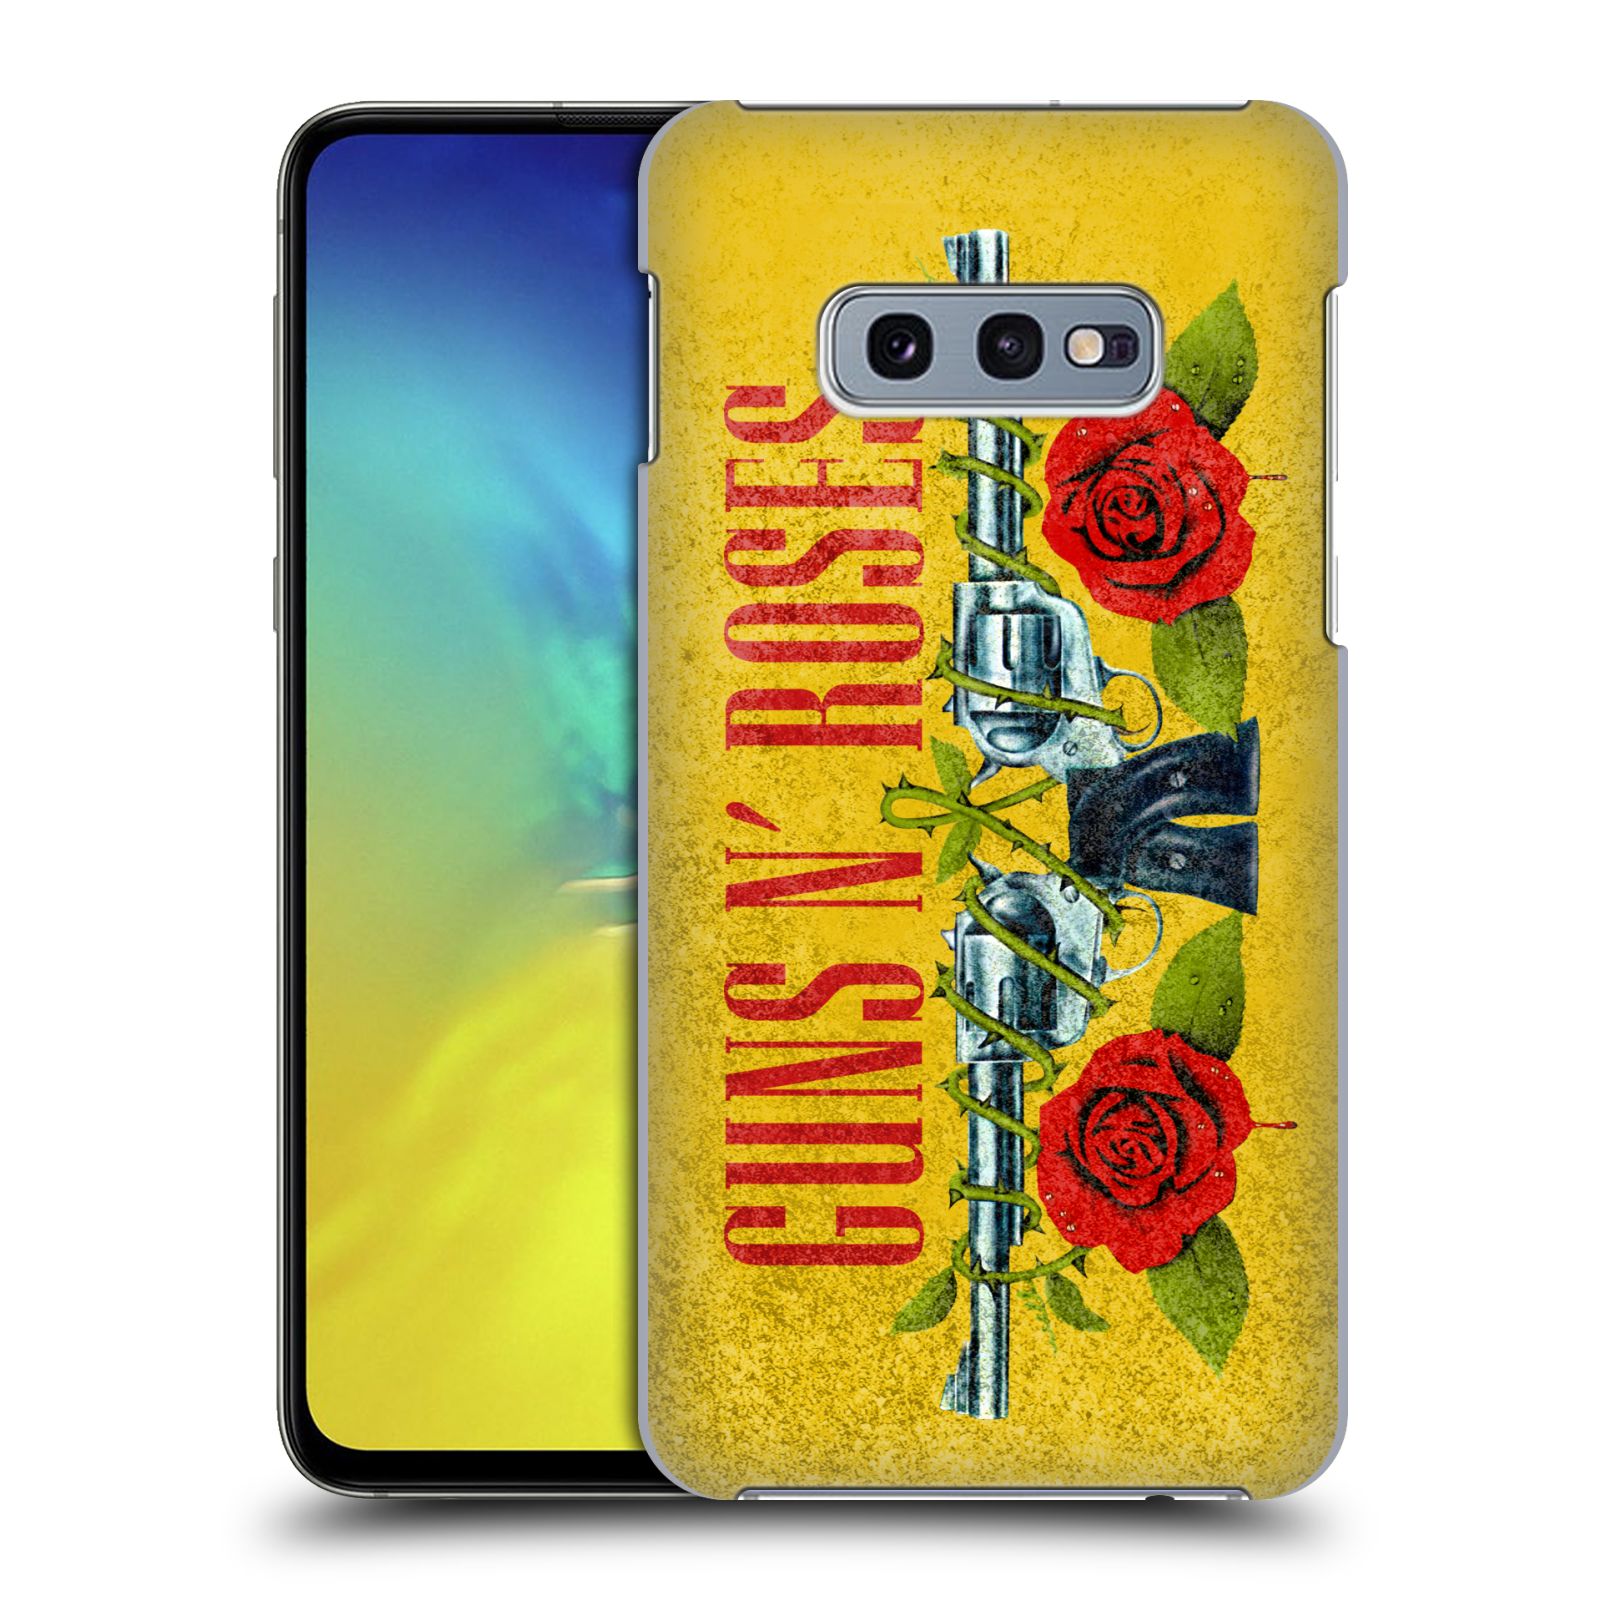 Pouzdro na mobil Samsung Galaxy S10e - HEAD CASE - hudební skupina Guns N Roses pistole a růže žluté pozadí